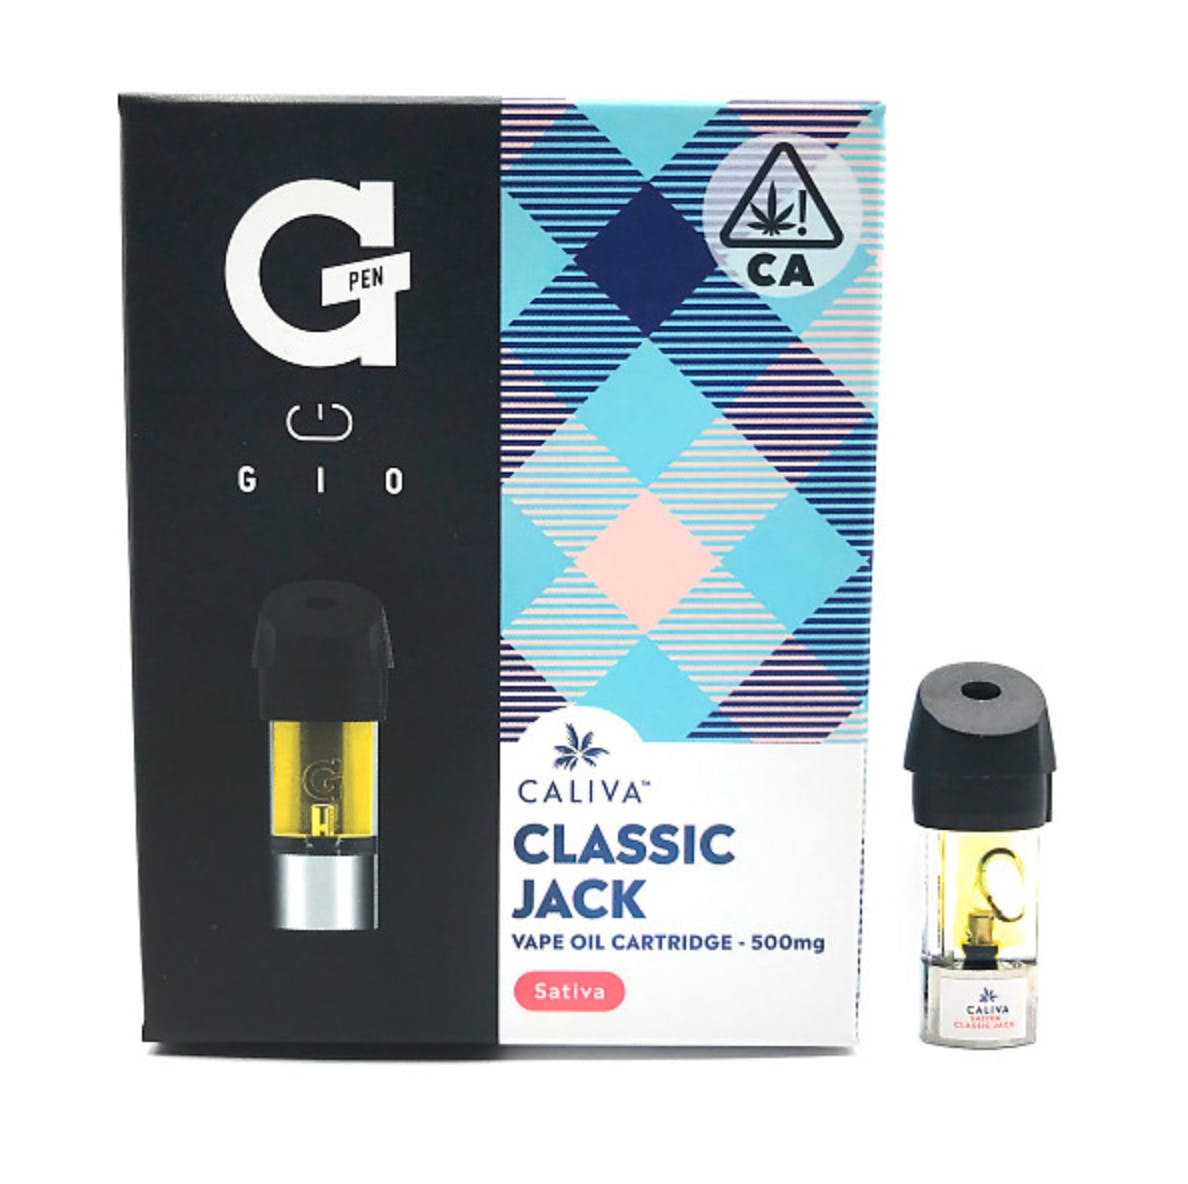 Classic Jack Gio Pod (.5g) - Caliva